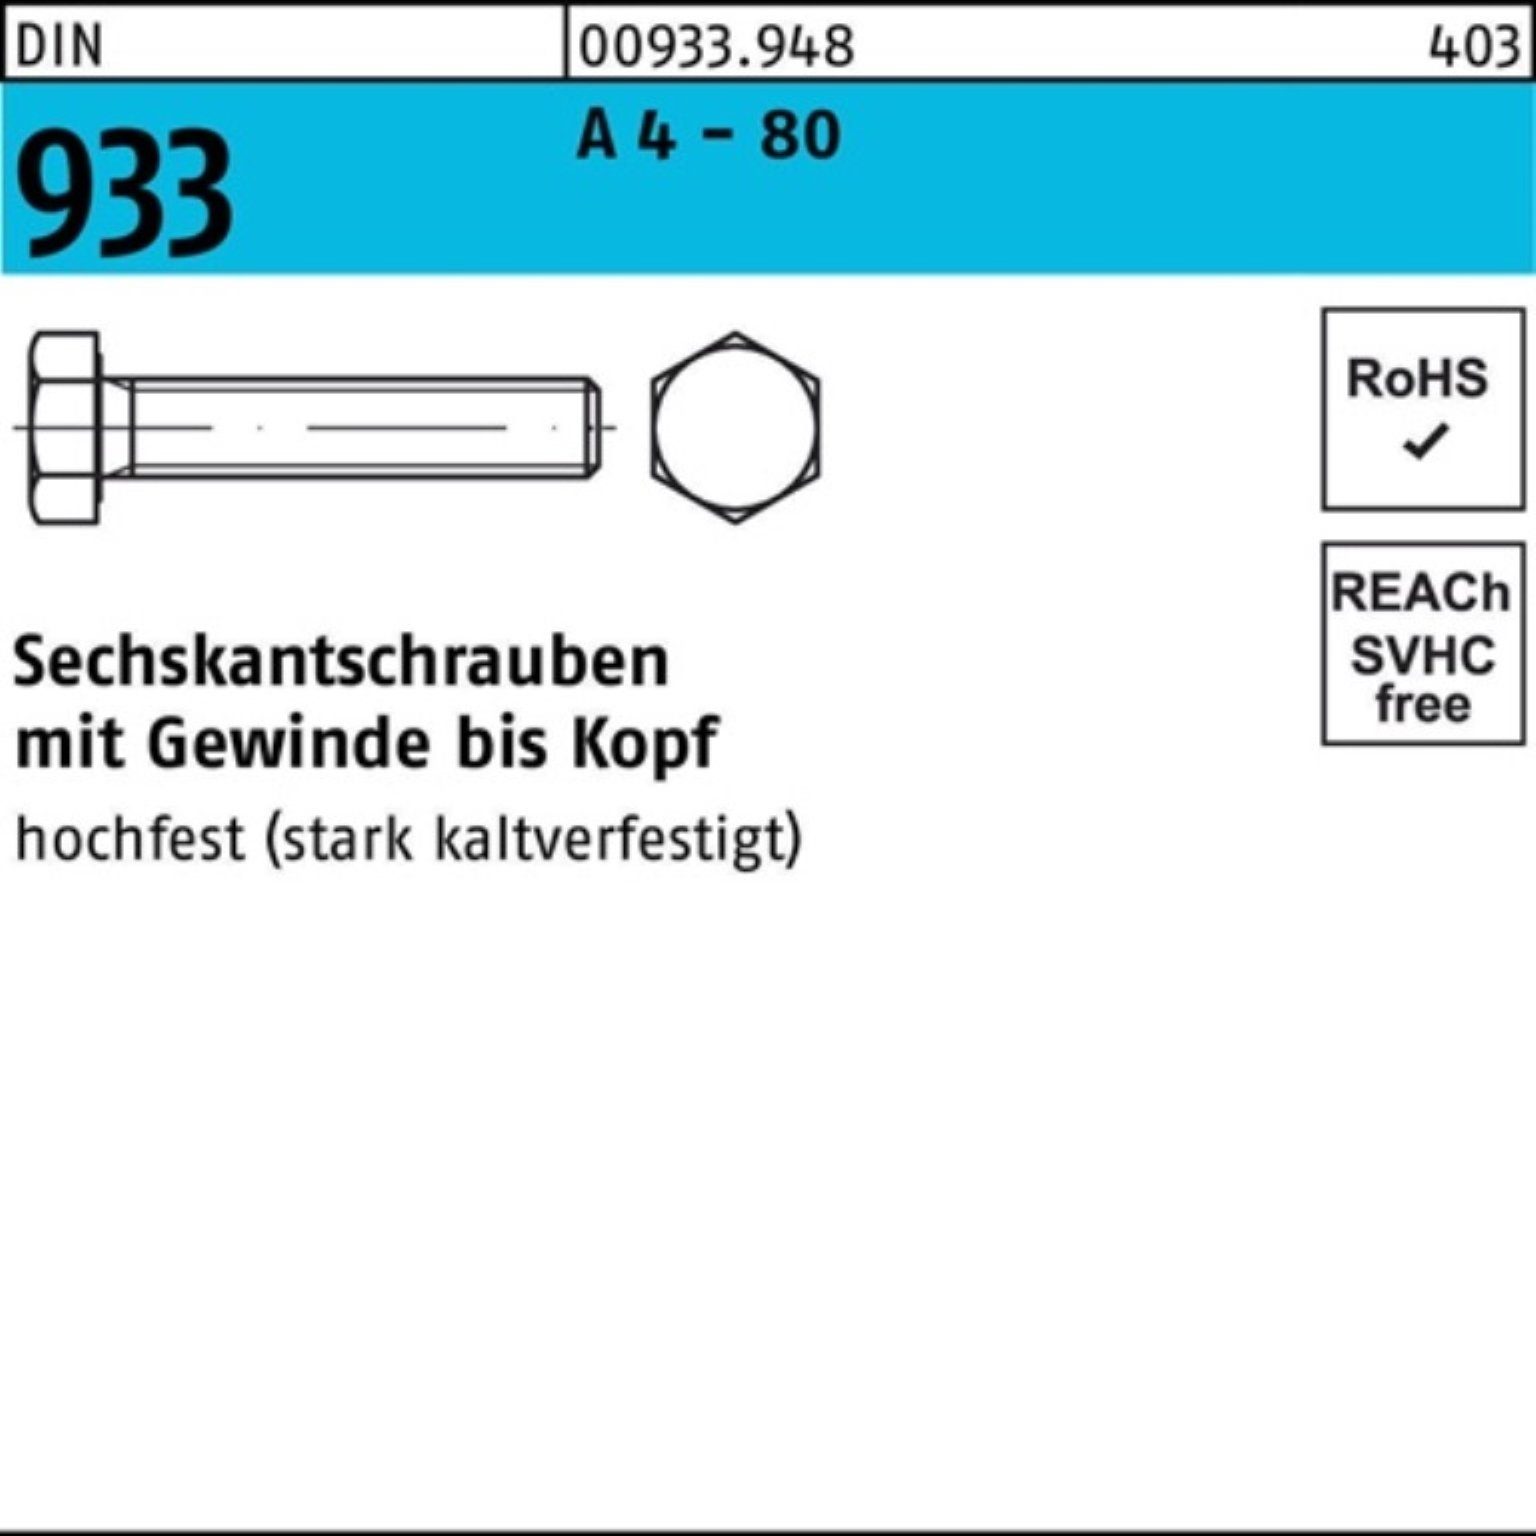 Reyher Sechskantschraube 100er Pack Sechskantschraube DIN 933 VG M8x 12 A 4 - 80 100 Stück DIN